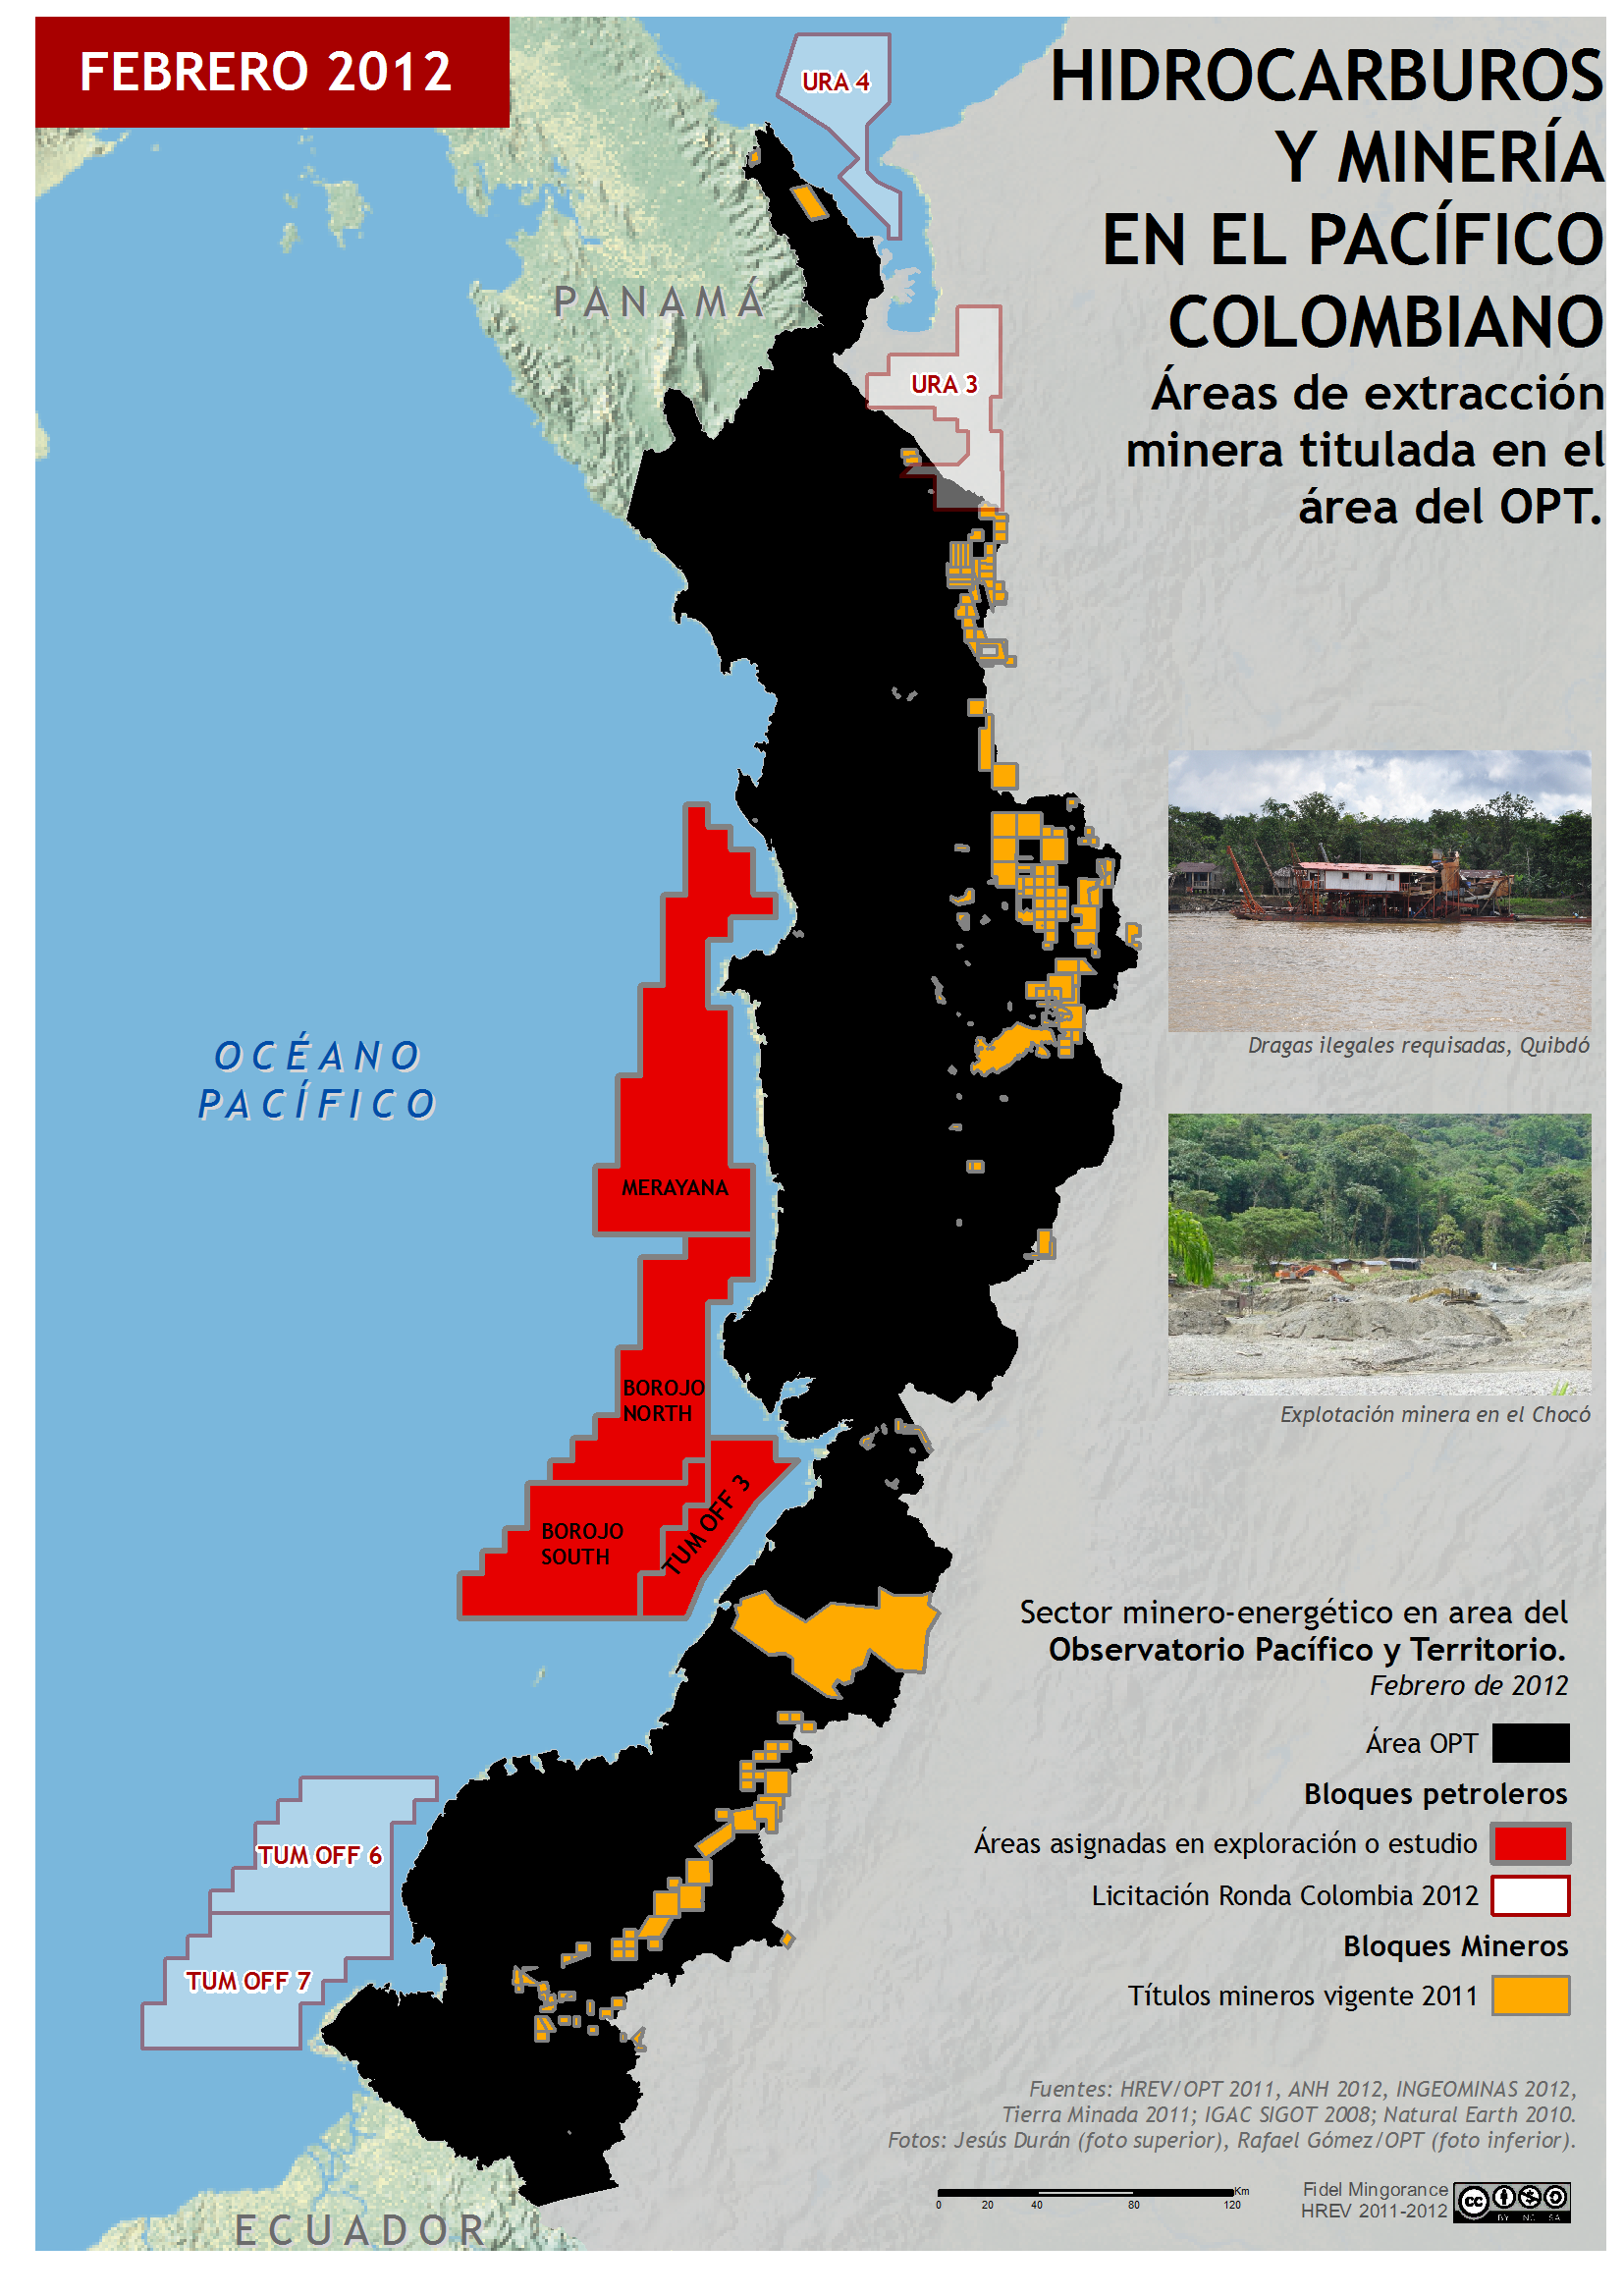 Hidrocarburos y minería en el Pacífico colombiano (2012)